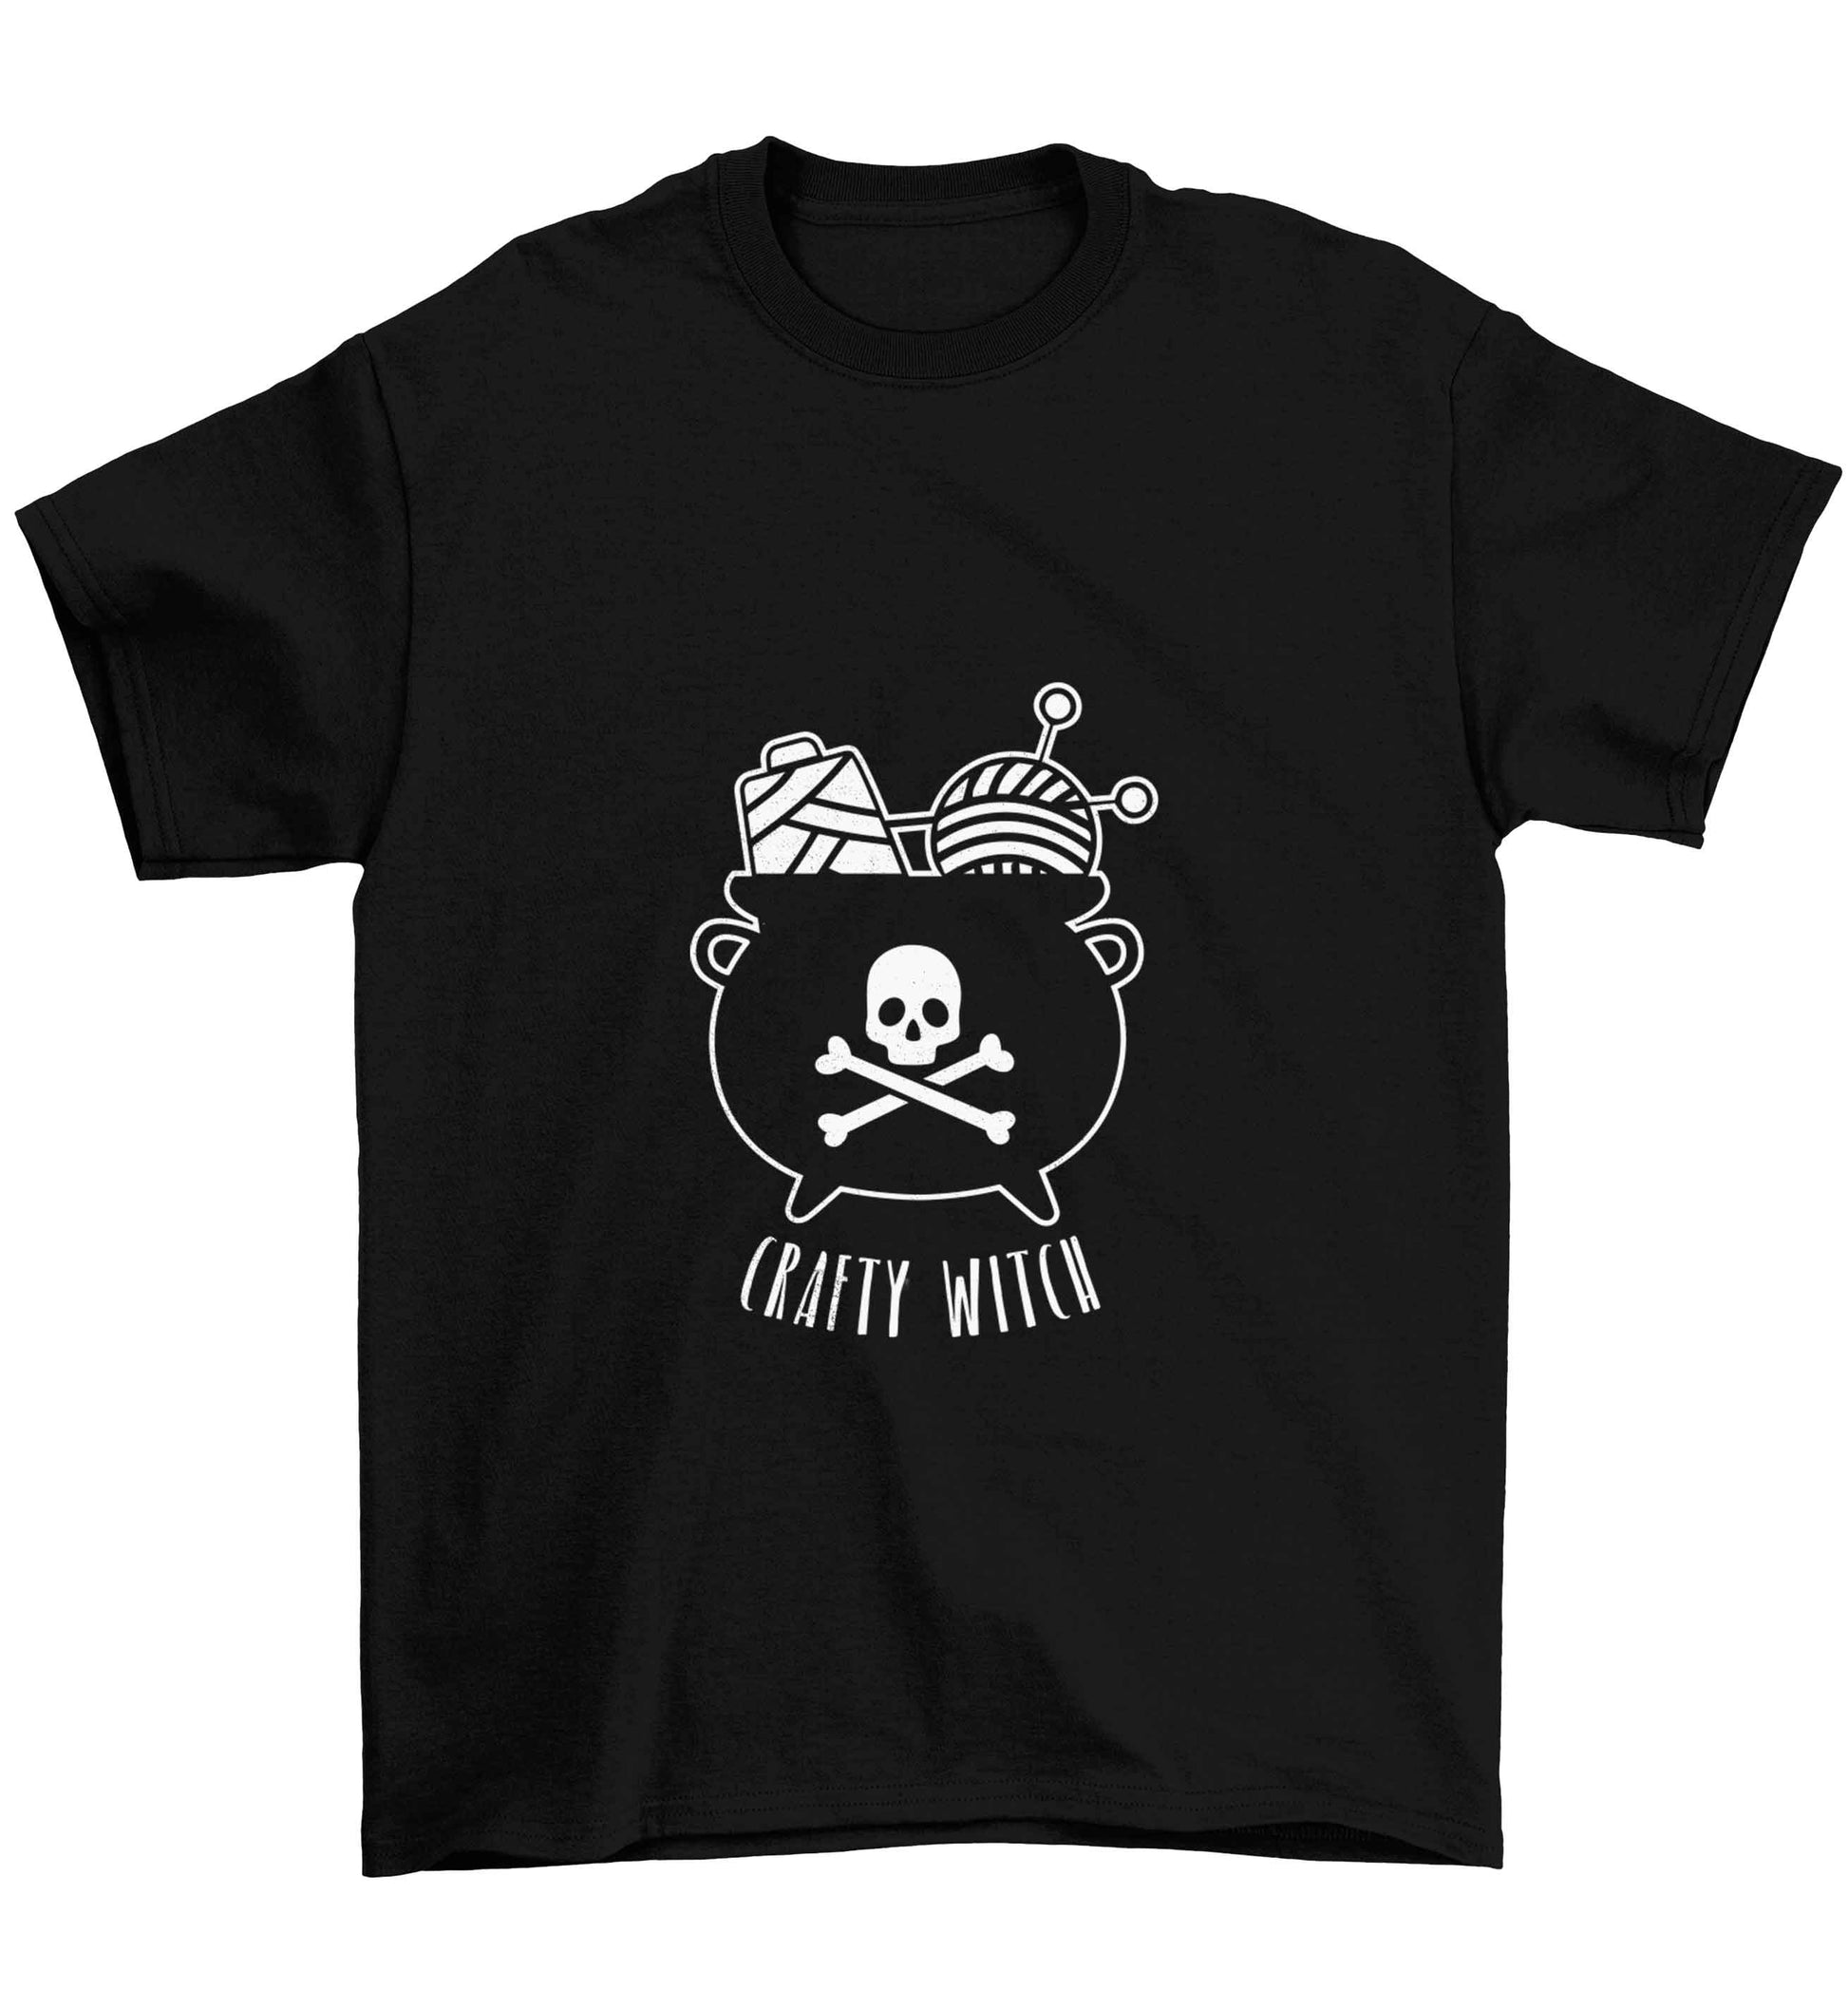 Crafty witch Children's black Tshirt 12-13 Years